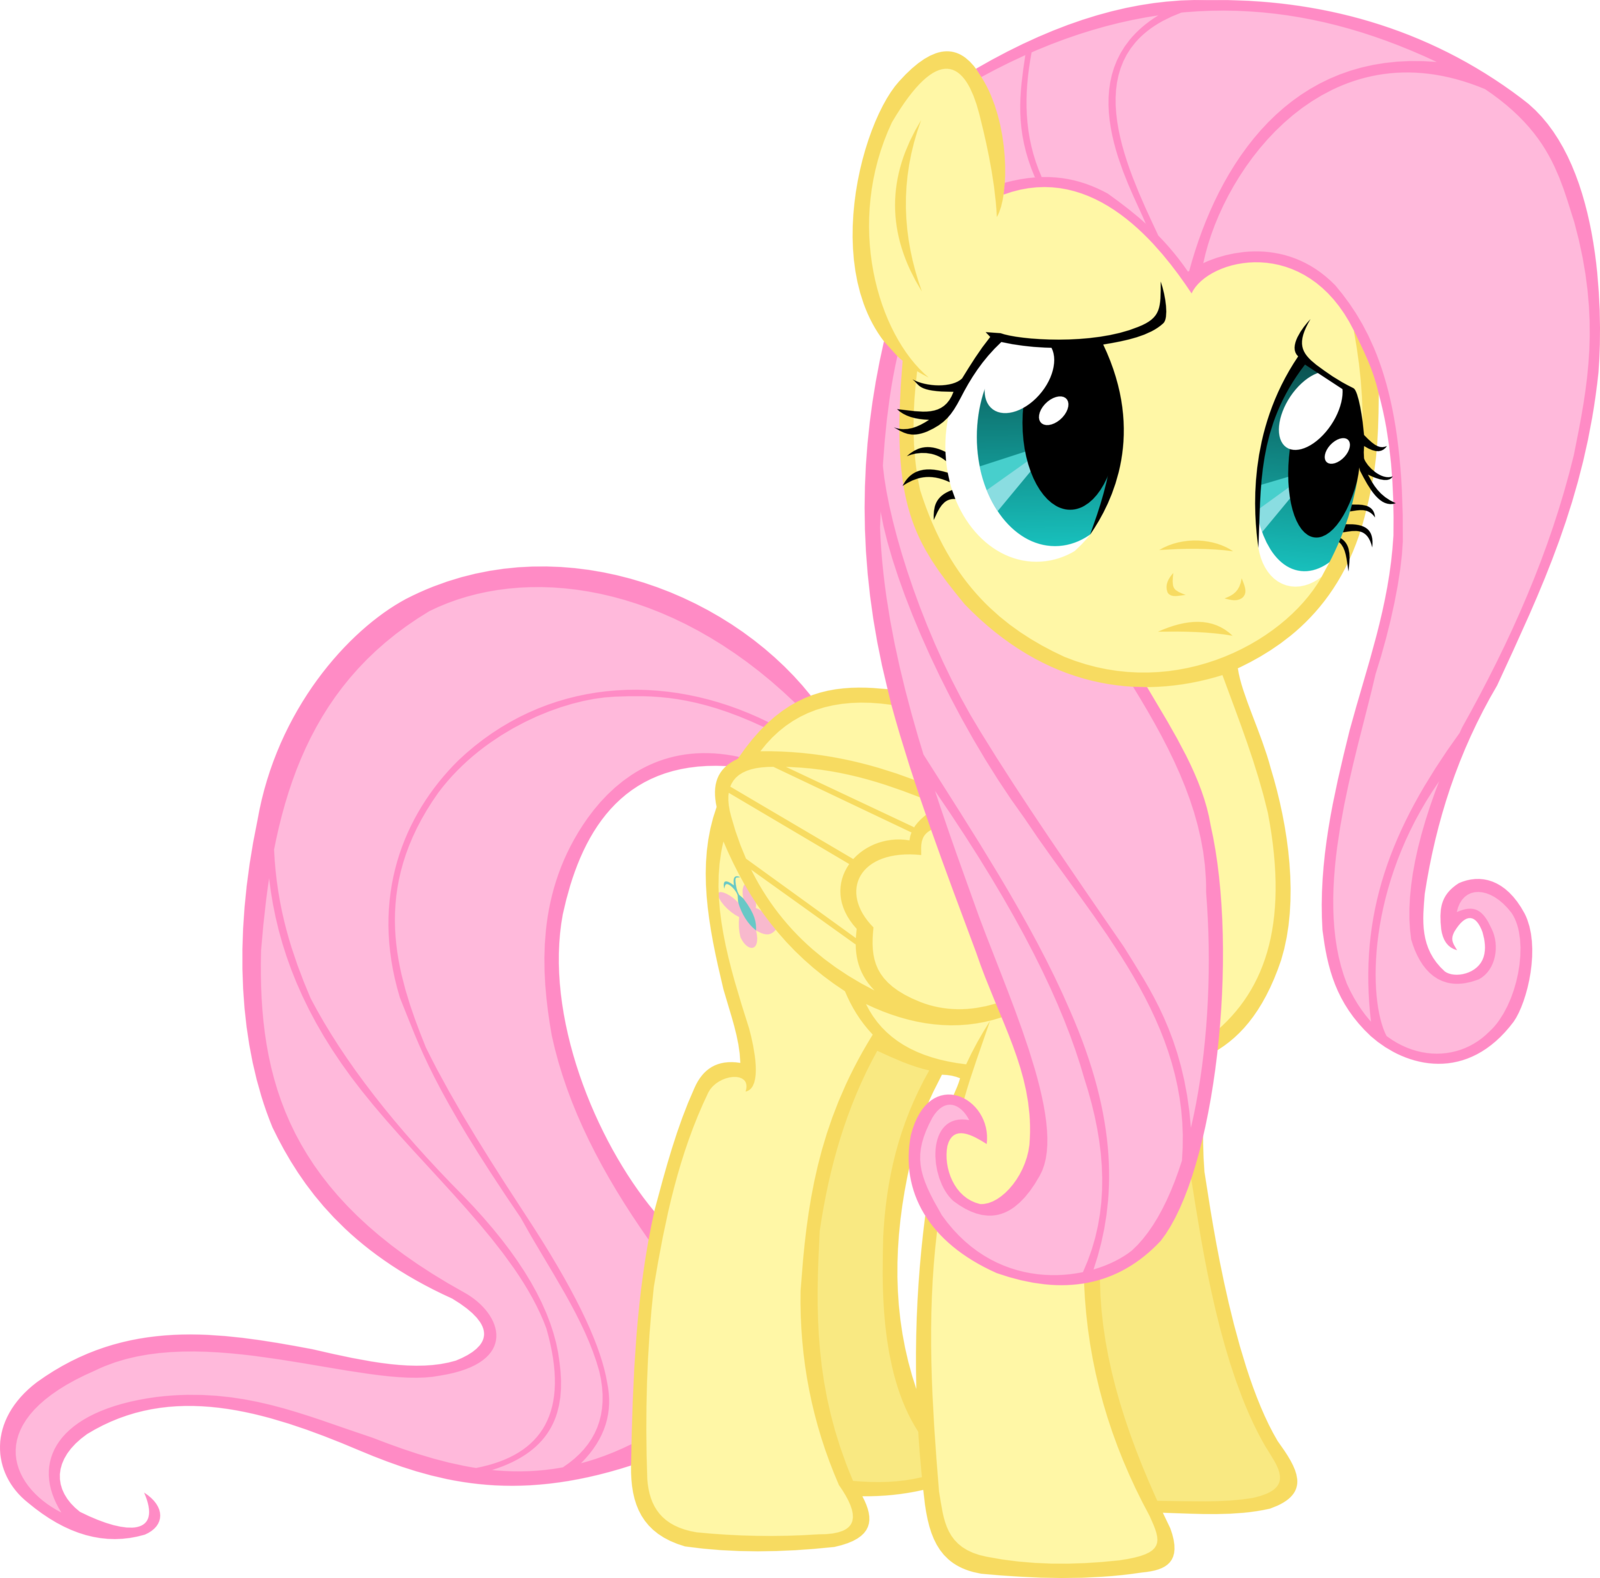 Fluttershy Princess Celestia Pinkie Pie Twilight Sparkle - My Little Pony: Friendship Is Magic (1600x1578)